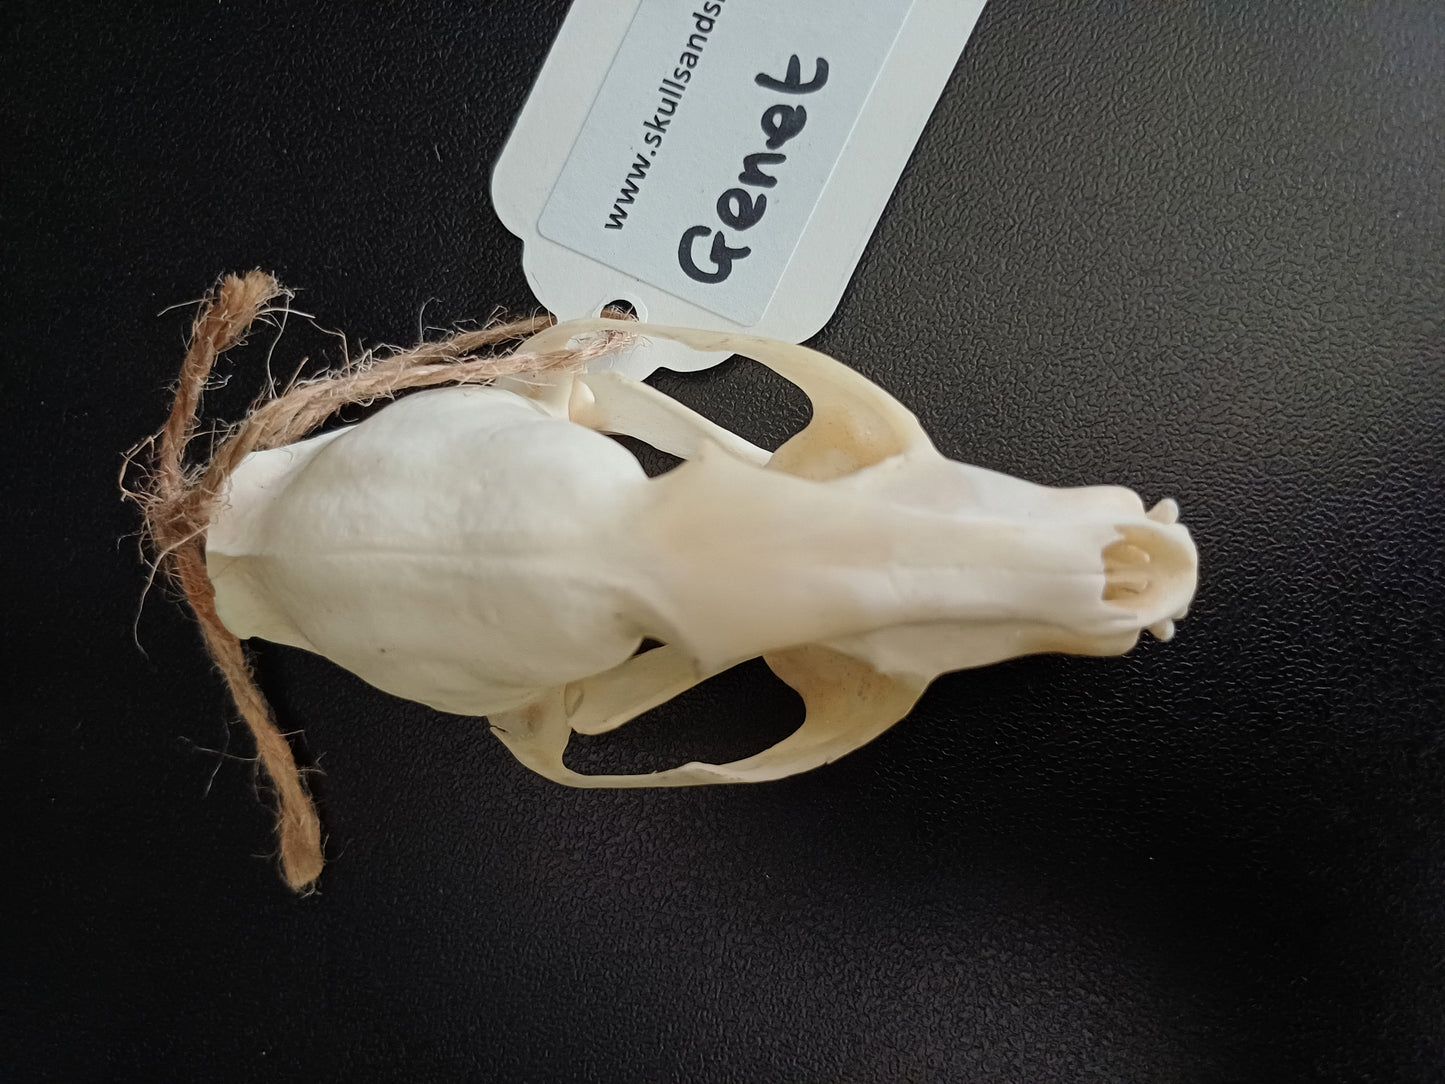 Common Genet skull